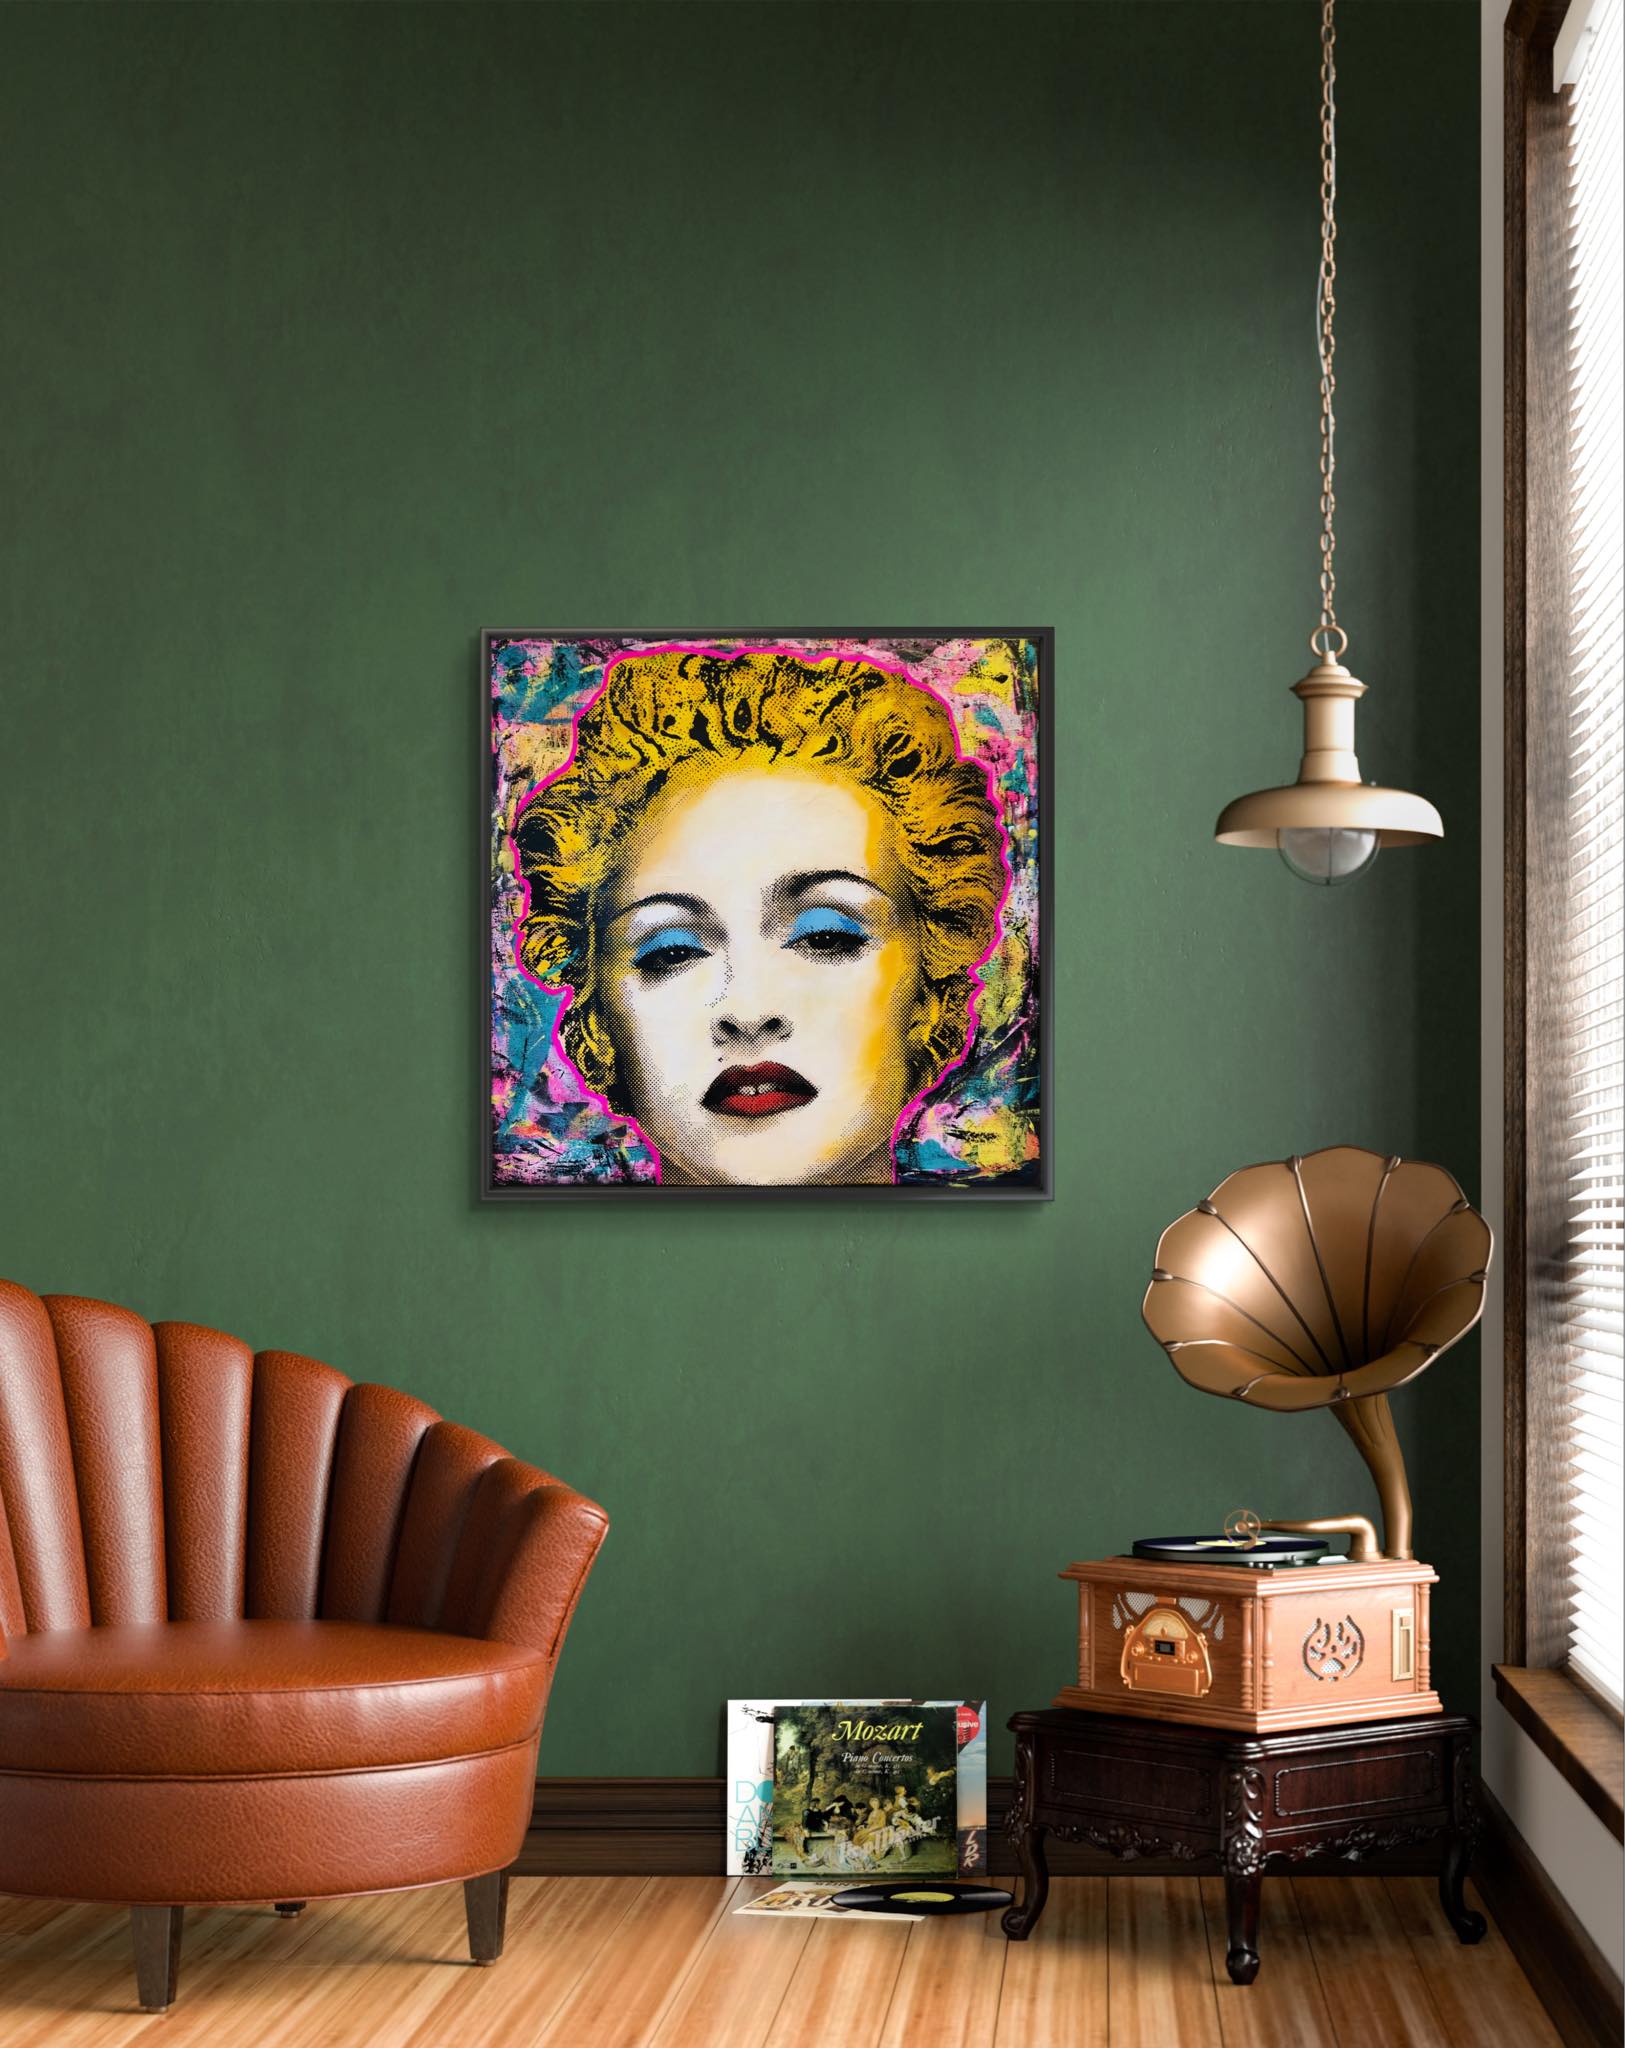 Madonna av Popart kunstneren Fru Bugge. Galleri2b har stort utvalg av popart og streetart. 